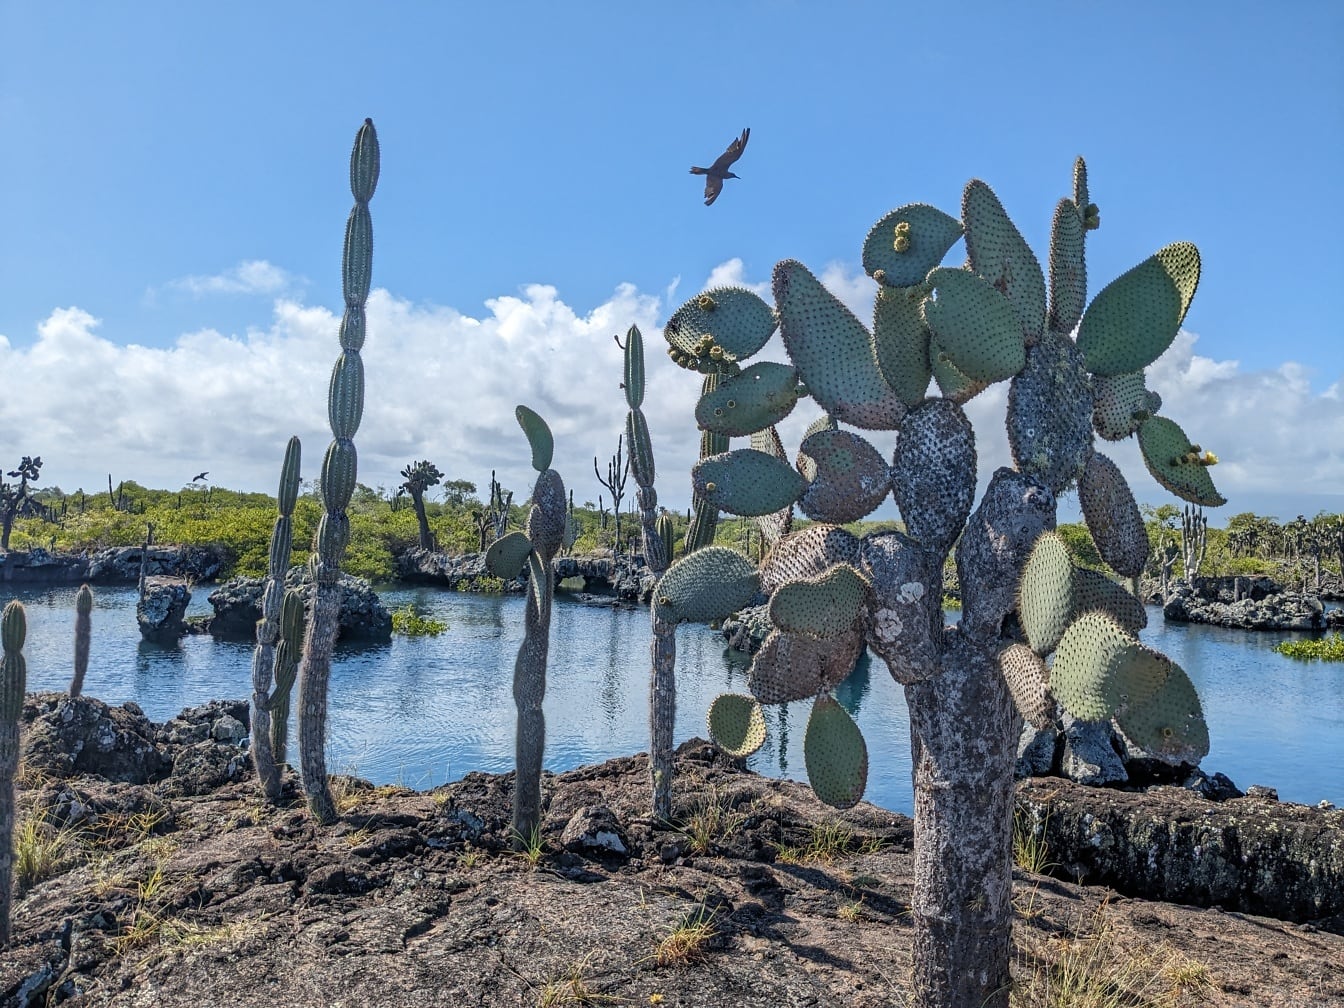 Pir berduri (Opuntia galapageia) spesies kaktus subtropis endemik Galapagos